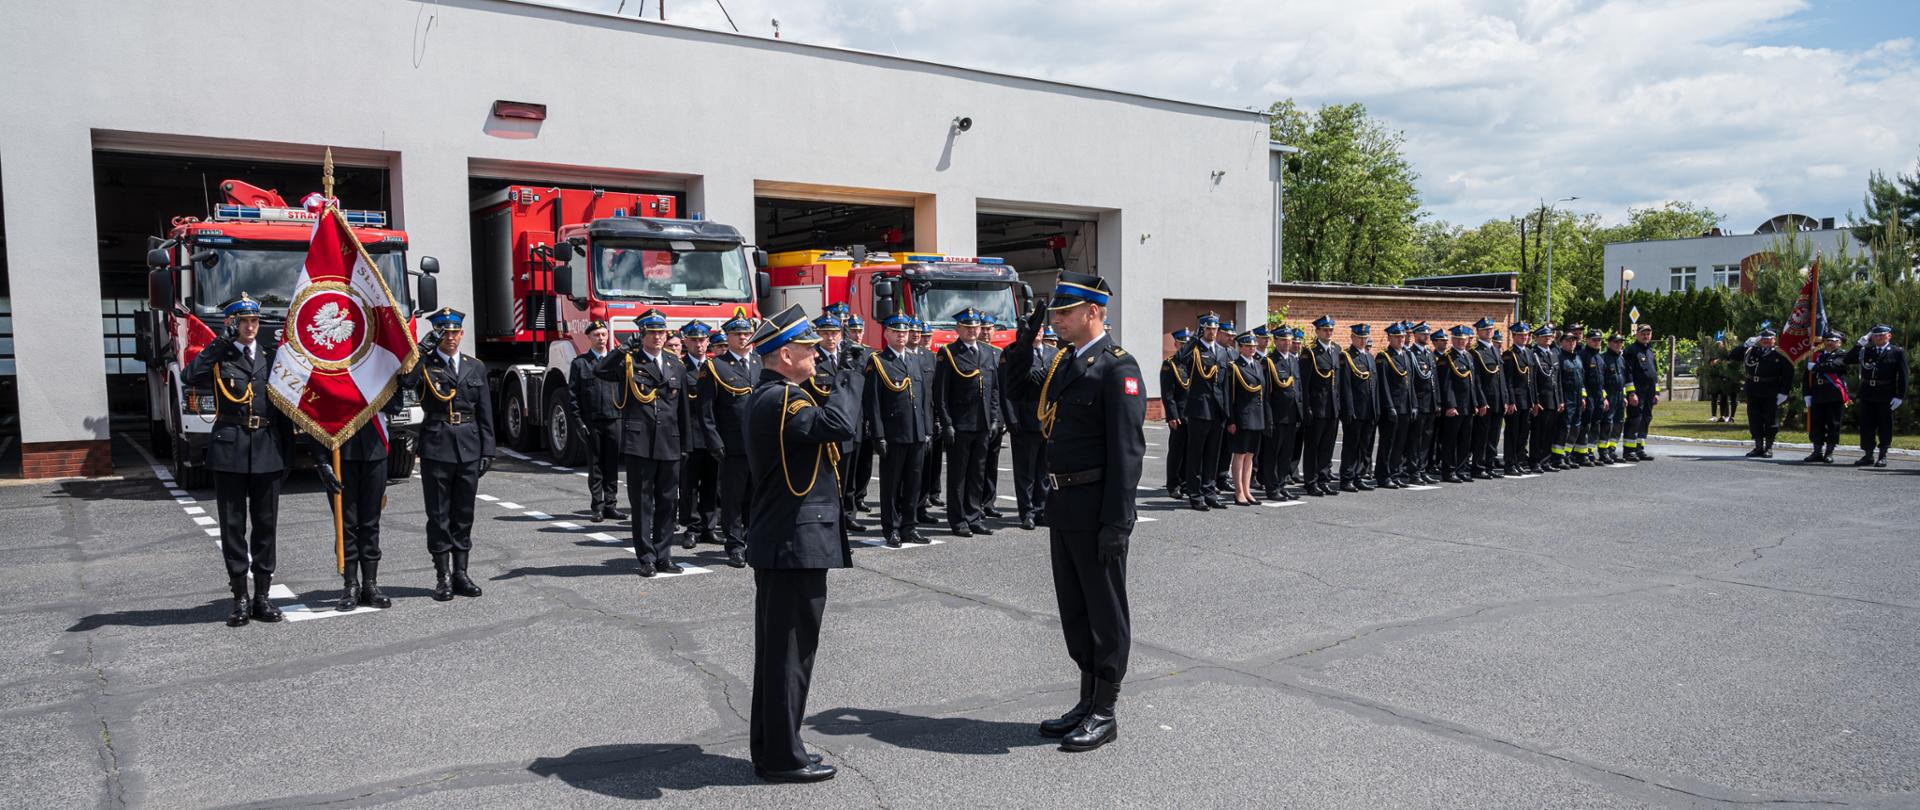 Dwóch strażaków salutuje do siebie w tle strażacy stoję w rzędzie